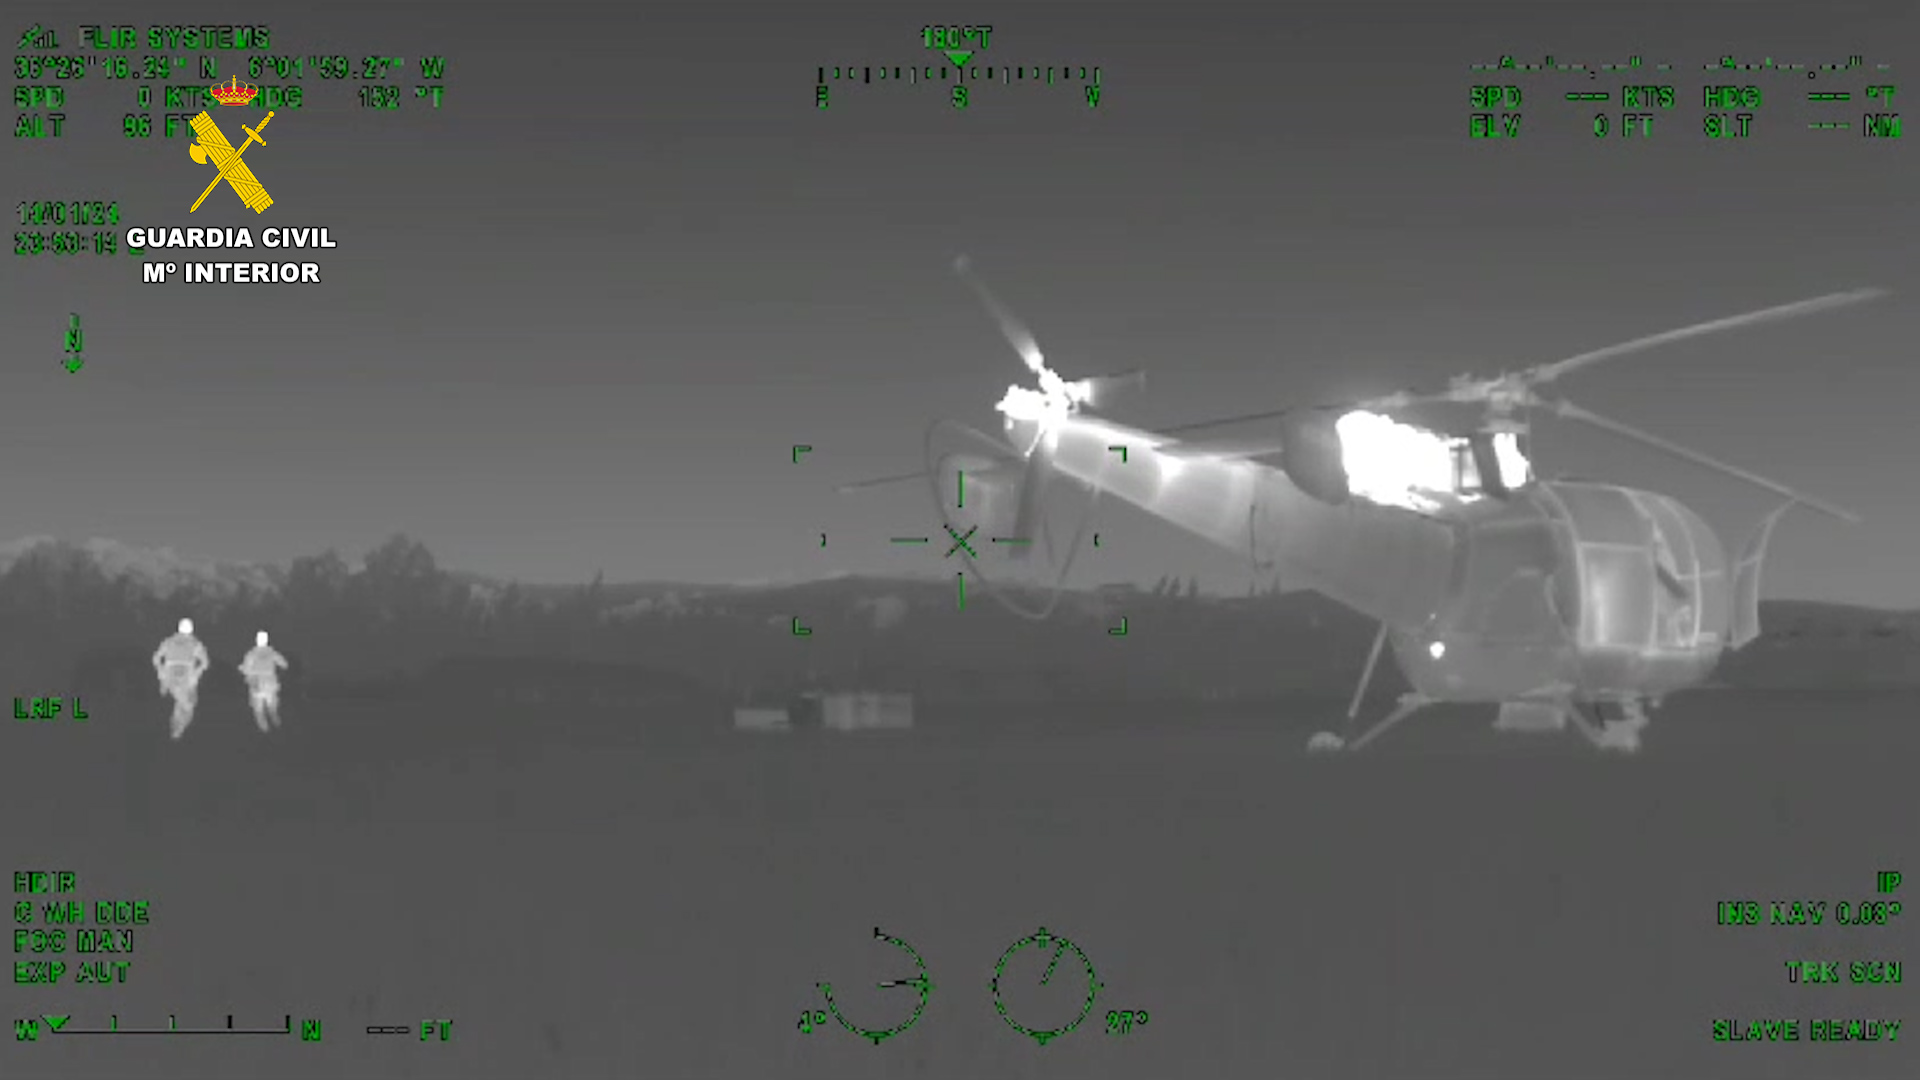 La Guardia Civil y la Gendarmería Real Marroquí desarticulan una organización e intervienen dos helicópteros utilizados para realizar “narcovuelos”